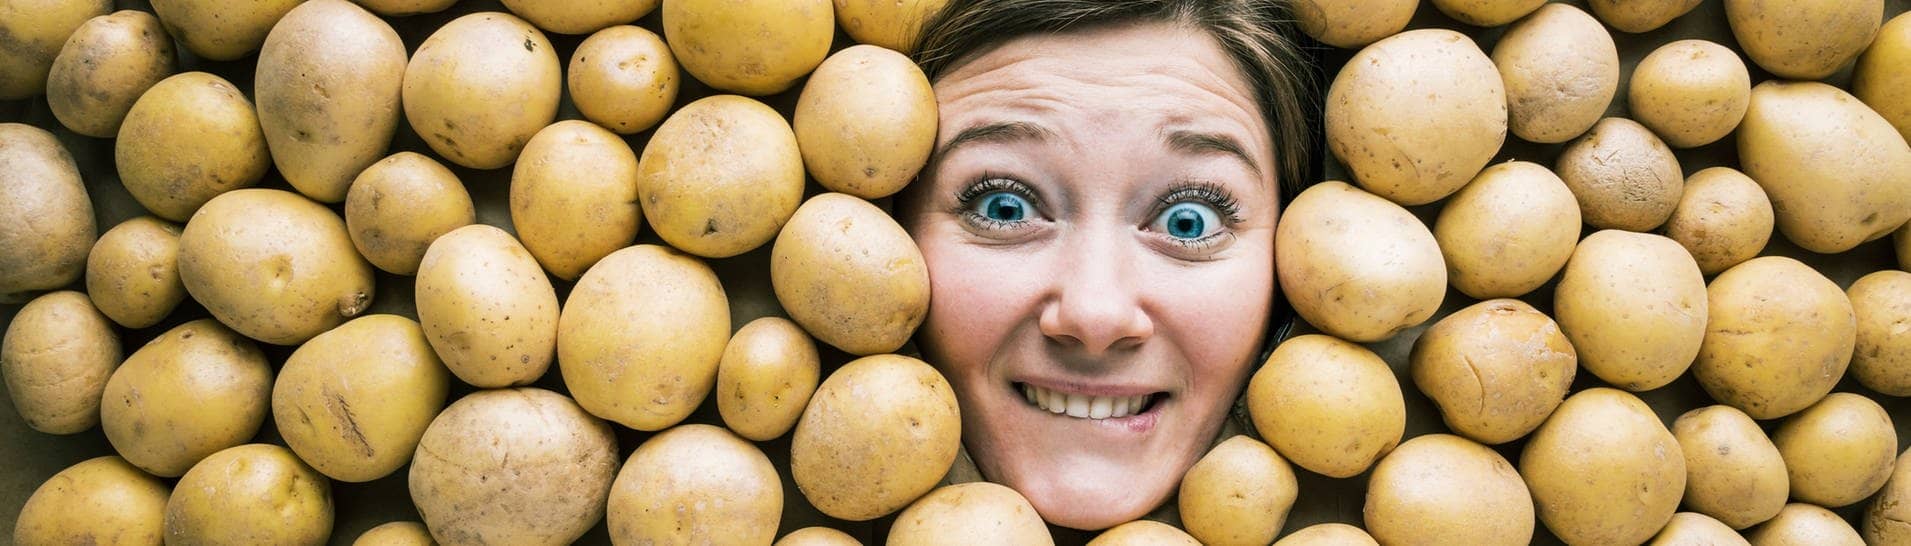 Gesicht einer Frau in einer Fläche aus Kartoffeln (Foto: Adobe Stock, karepa)